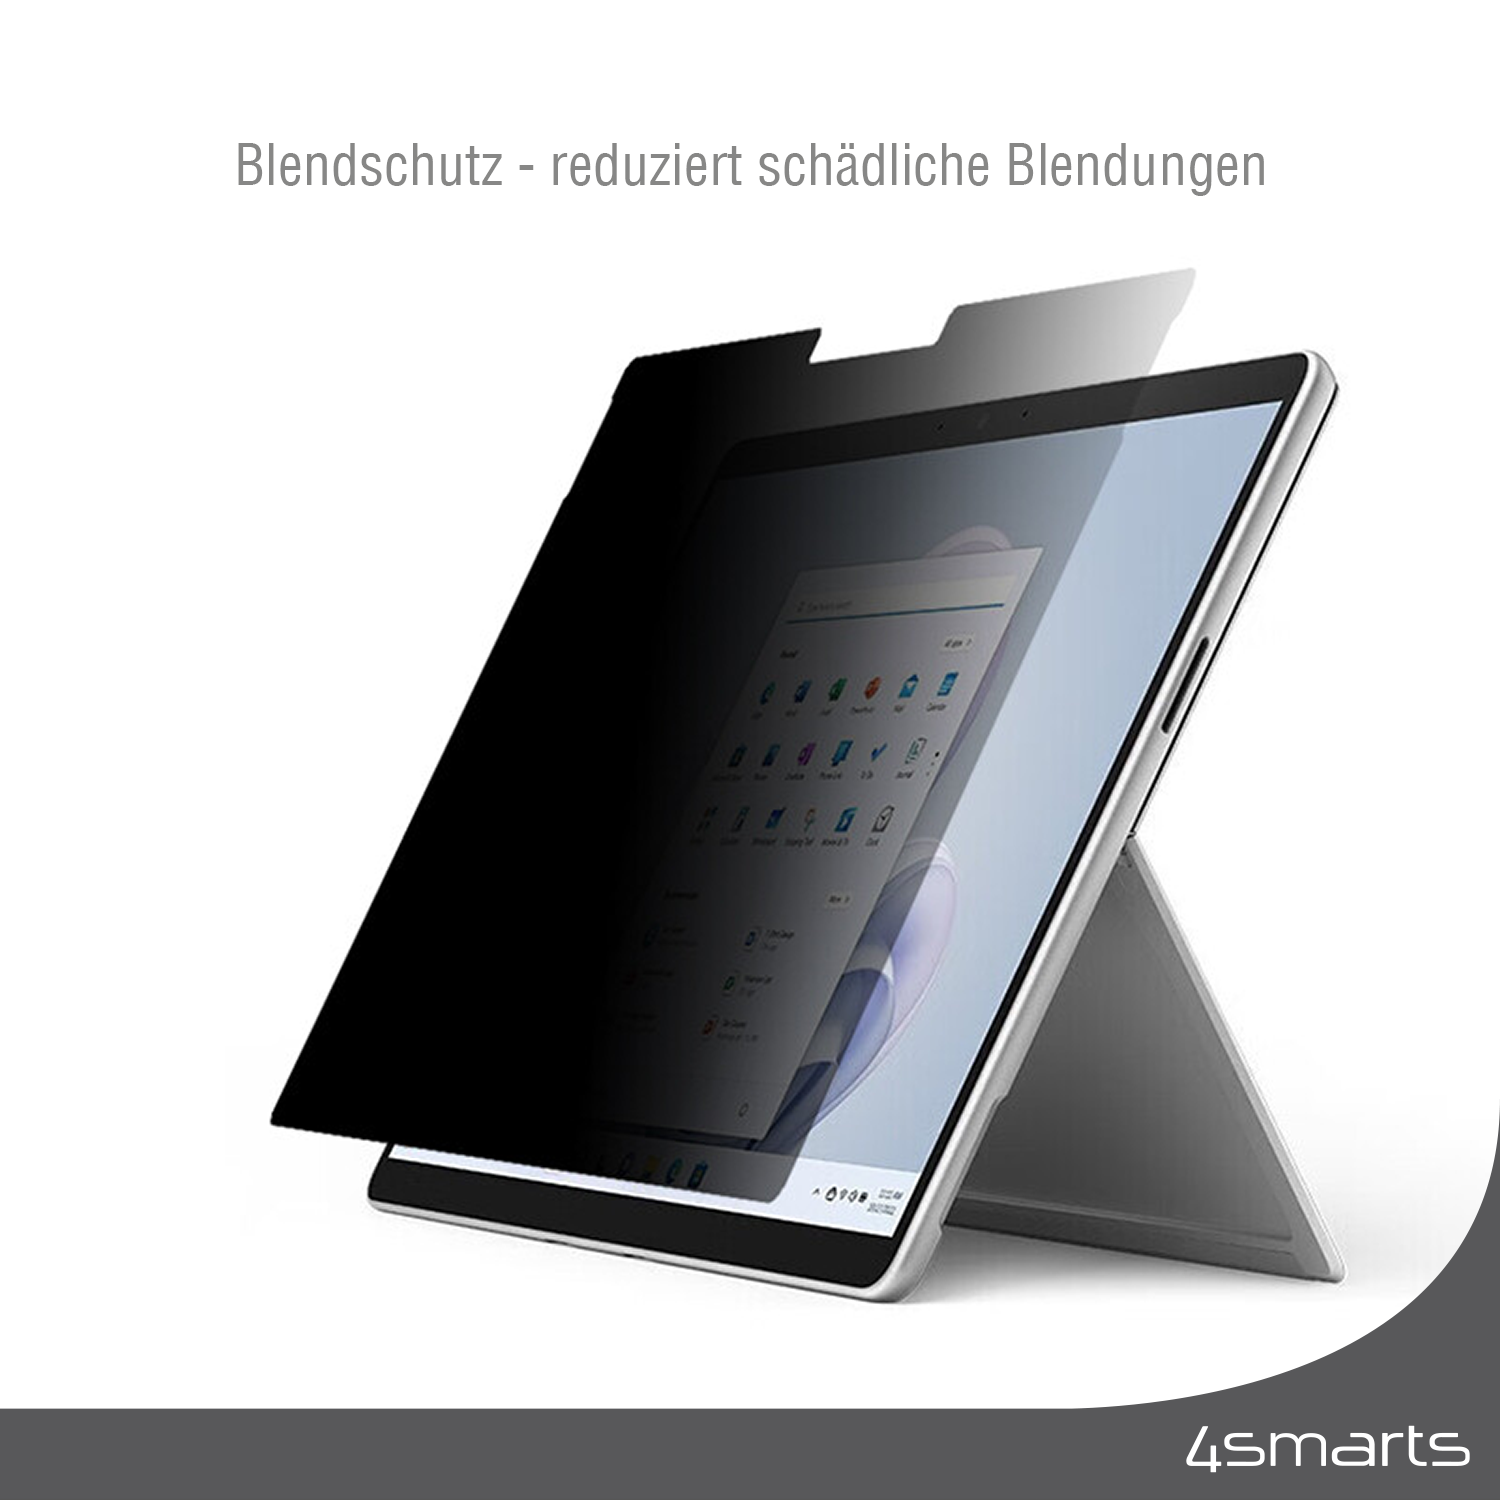 Mit 4smarts Tablet Schutzsichtfolie für Surface Pro 8 / Pro 9 wird dein Display auch vor Kratzern und Verschmutzungen wirkungsvoll geschützt.